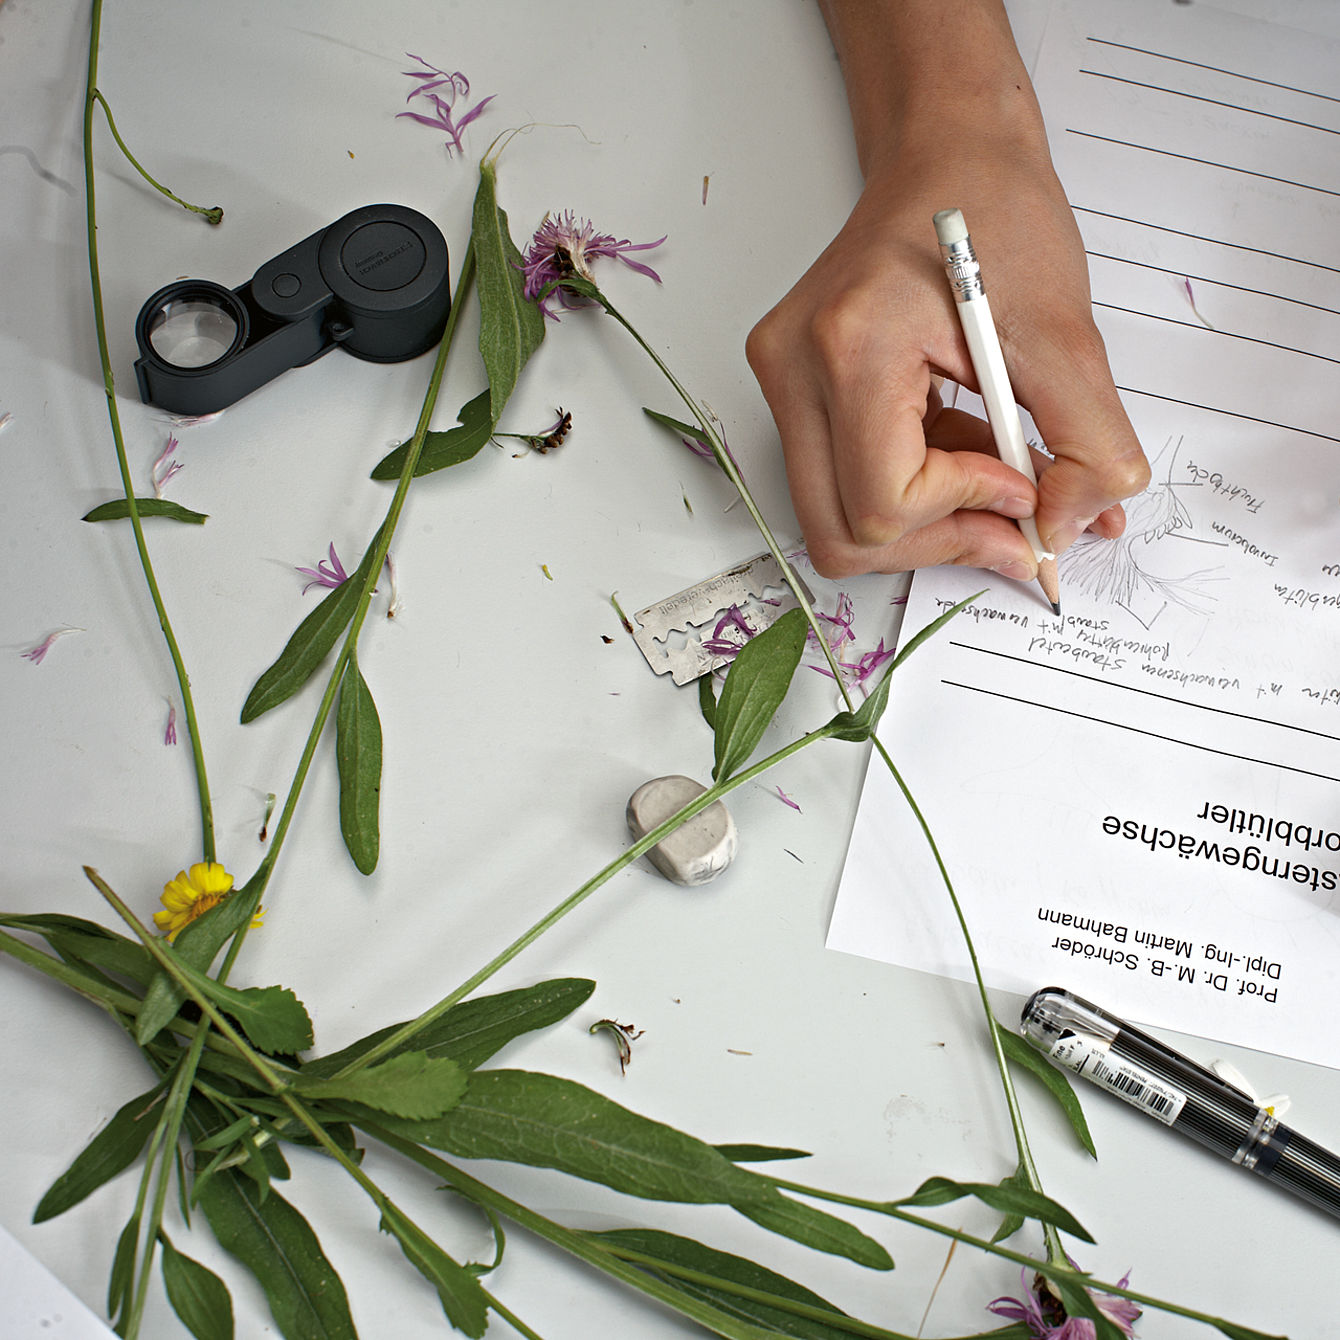 Eine Person notiert etwas auf einem Blatt Papier, daneben liegen eine Lupe und Pflanzenteile © Hochschule Geisenheim / ppsstudios.com